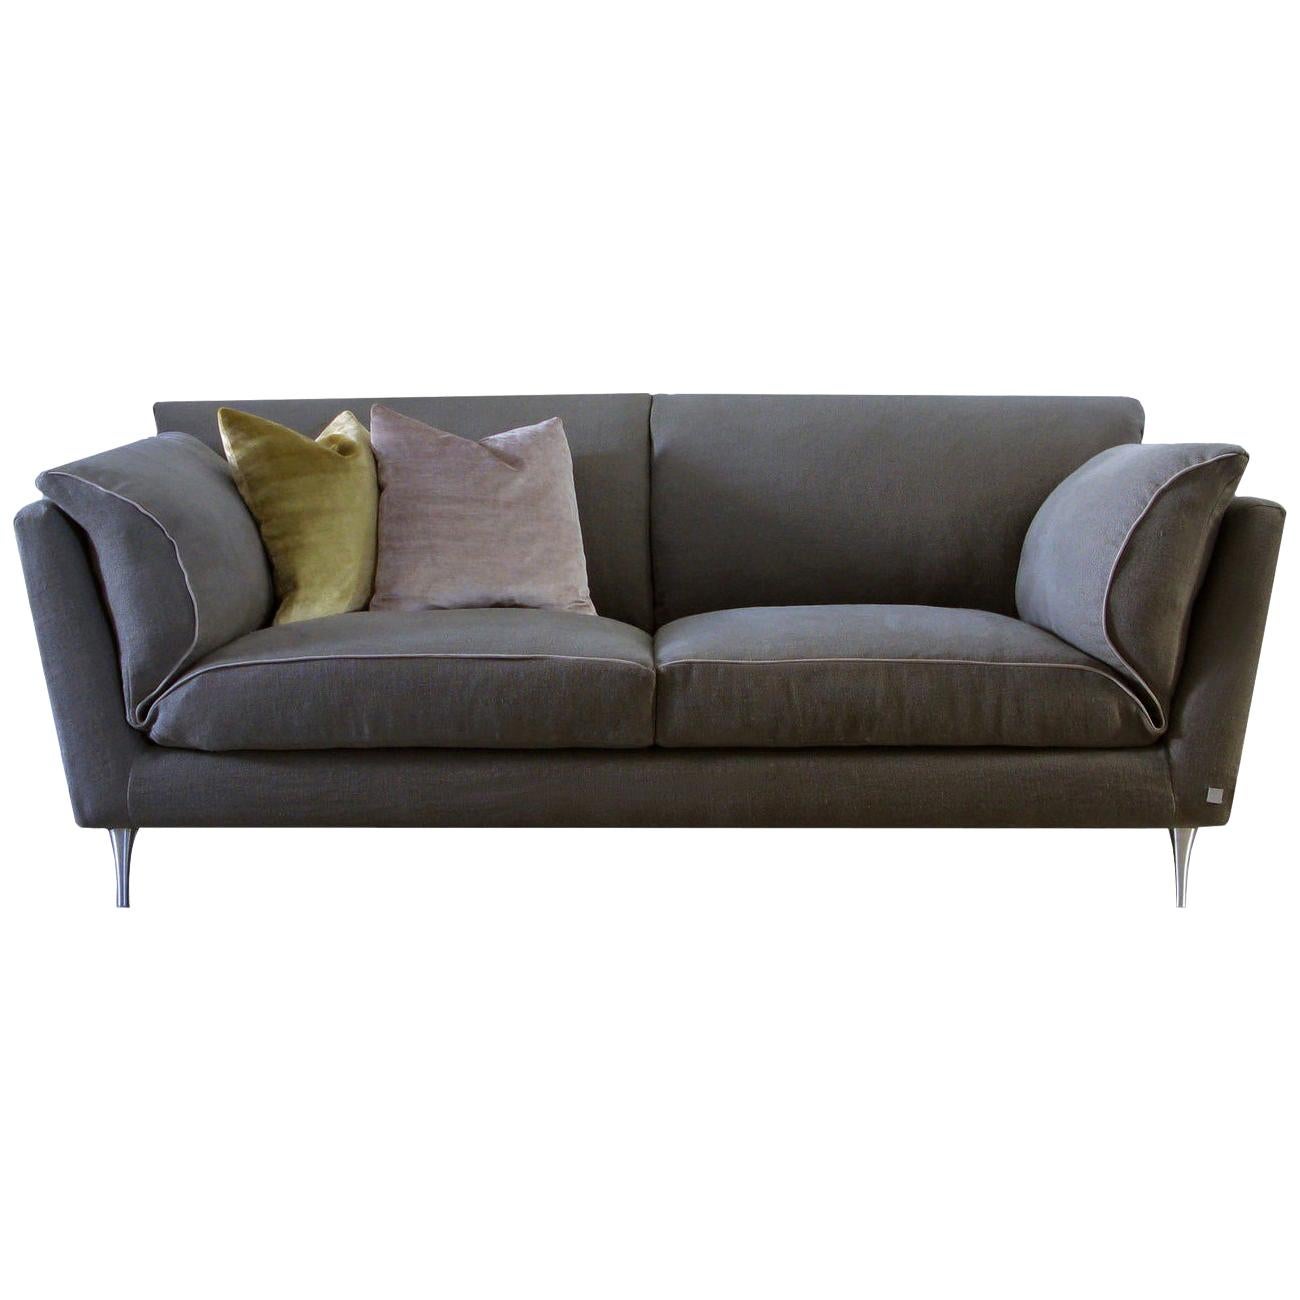 Casquet Beige Sofa by DDP Studio